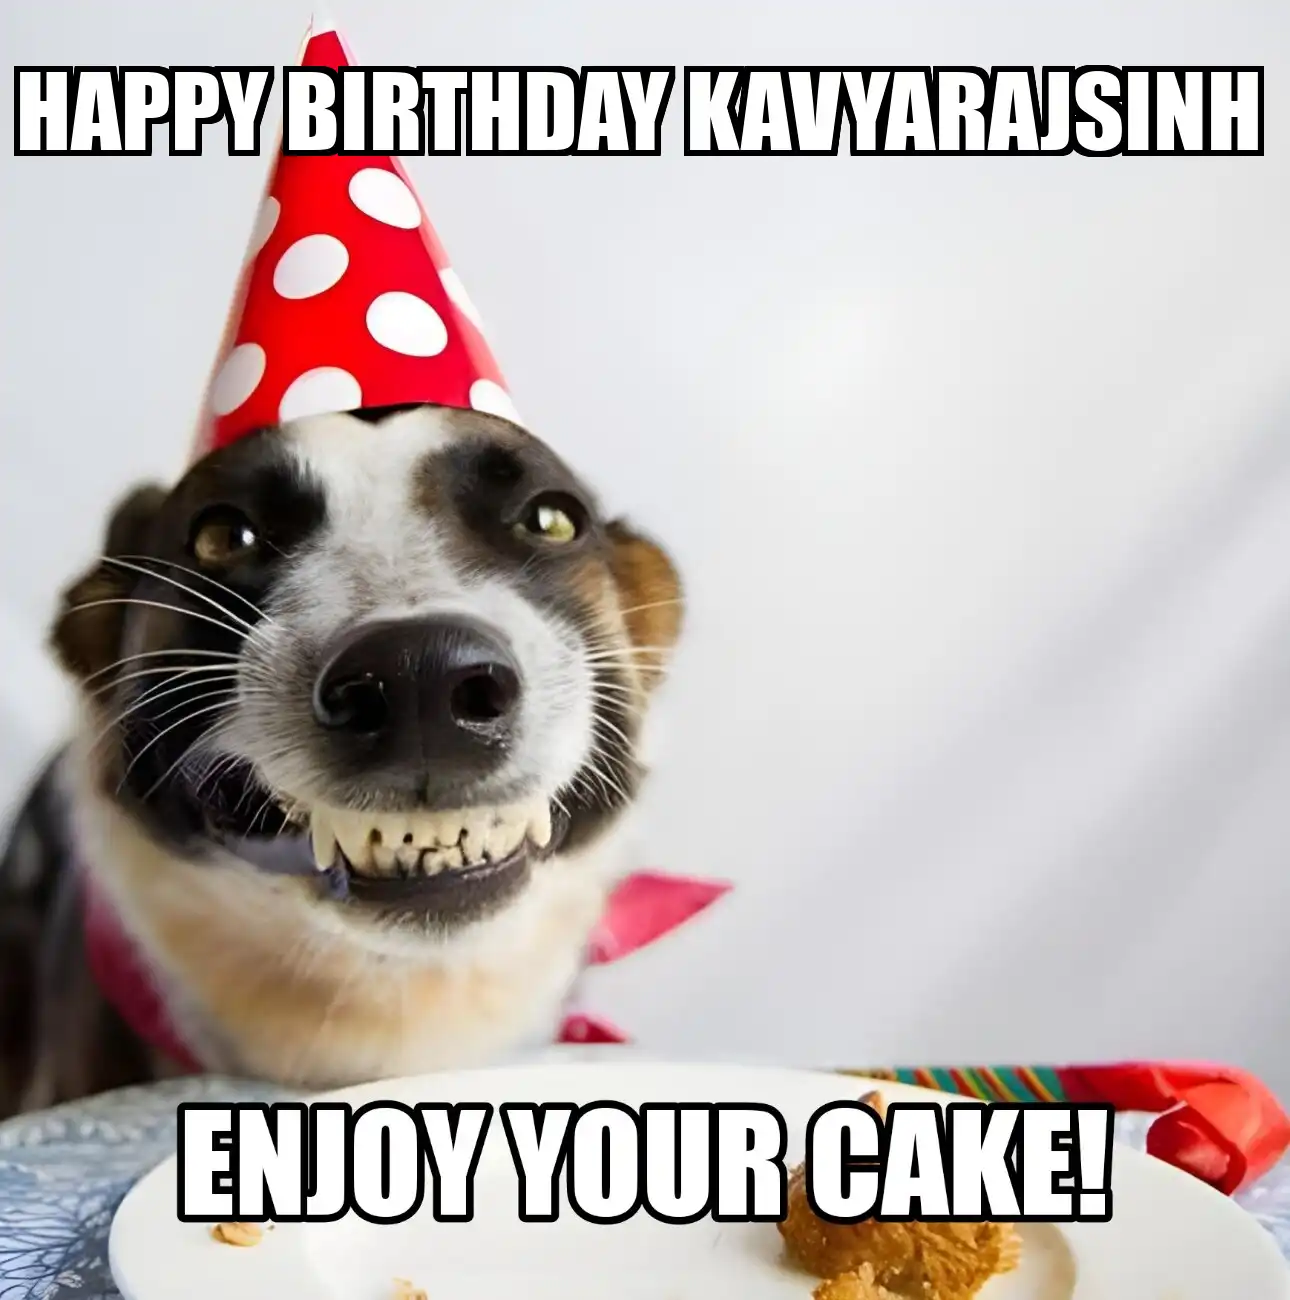 Happy Birthday Kavyarajsinh Enjoy Your Cake Dog Meme